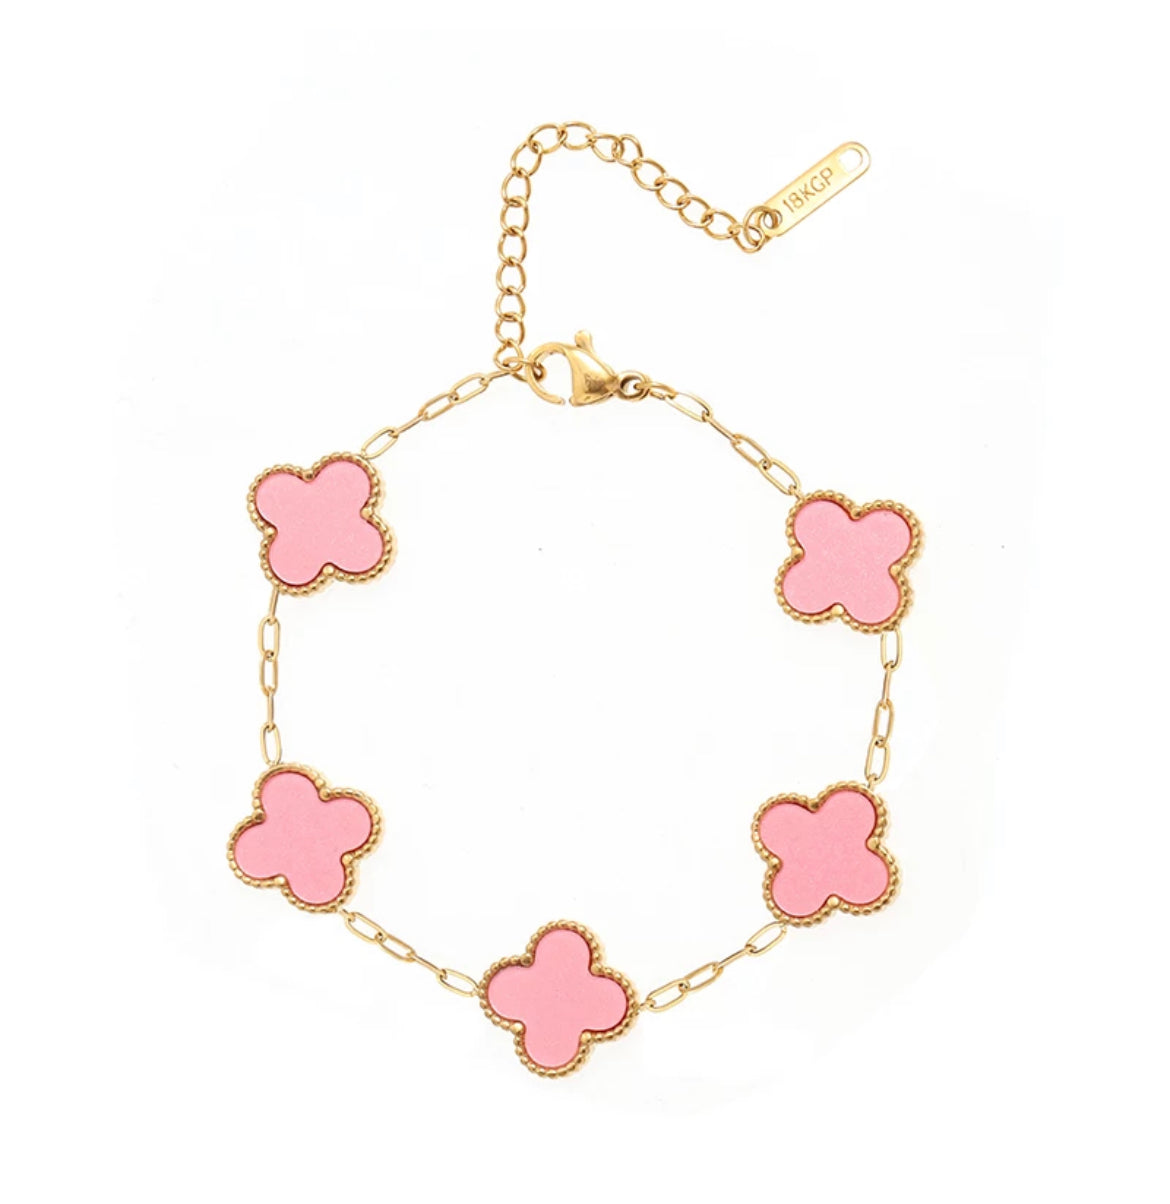 18k Gold Plated Pink Enamel Clover Adjustable Bracelet - Byou Designs